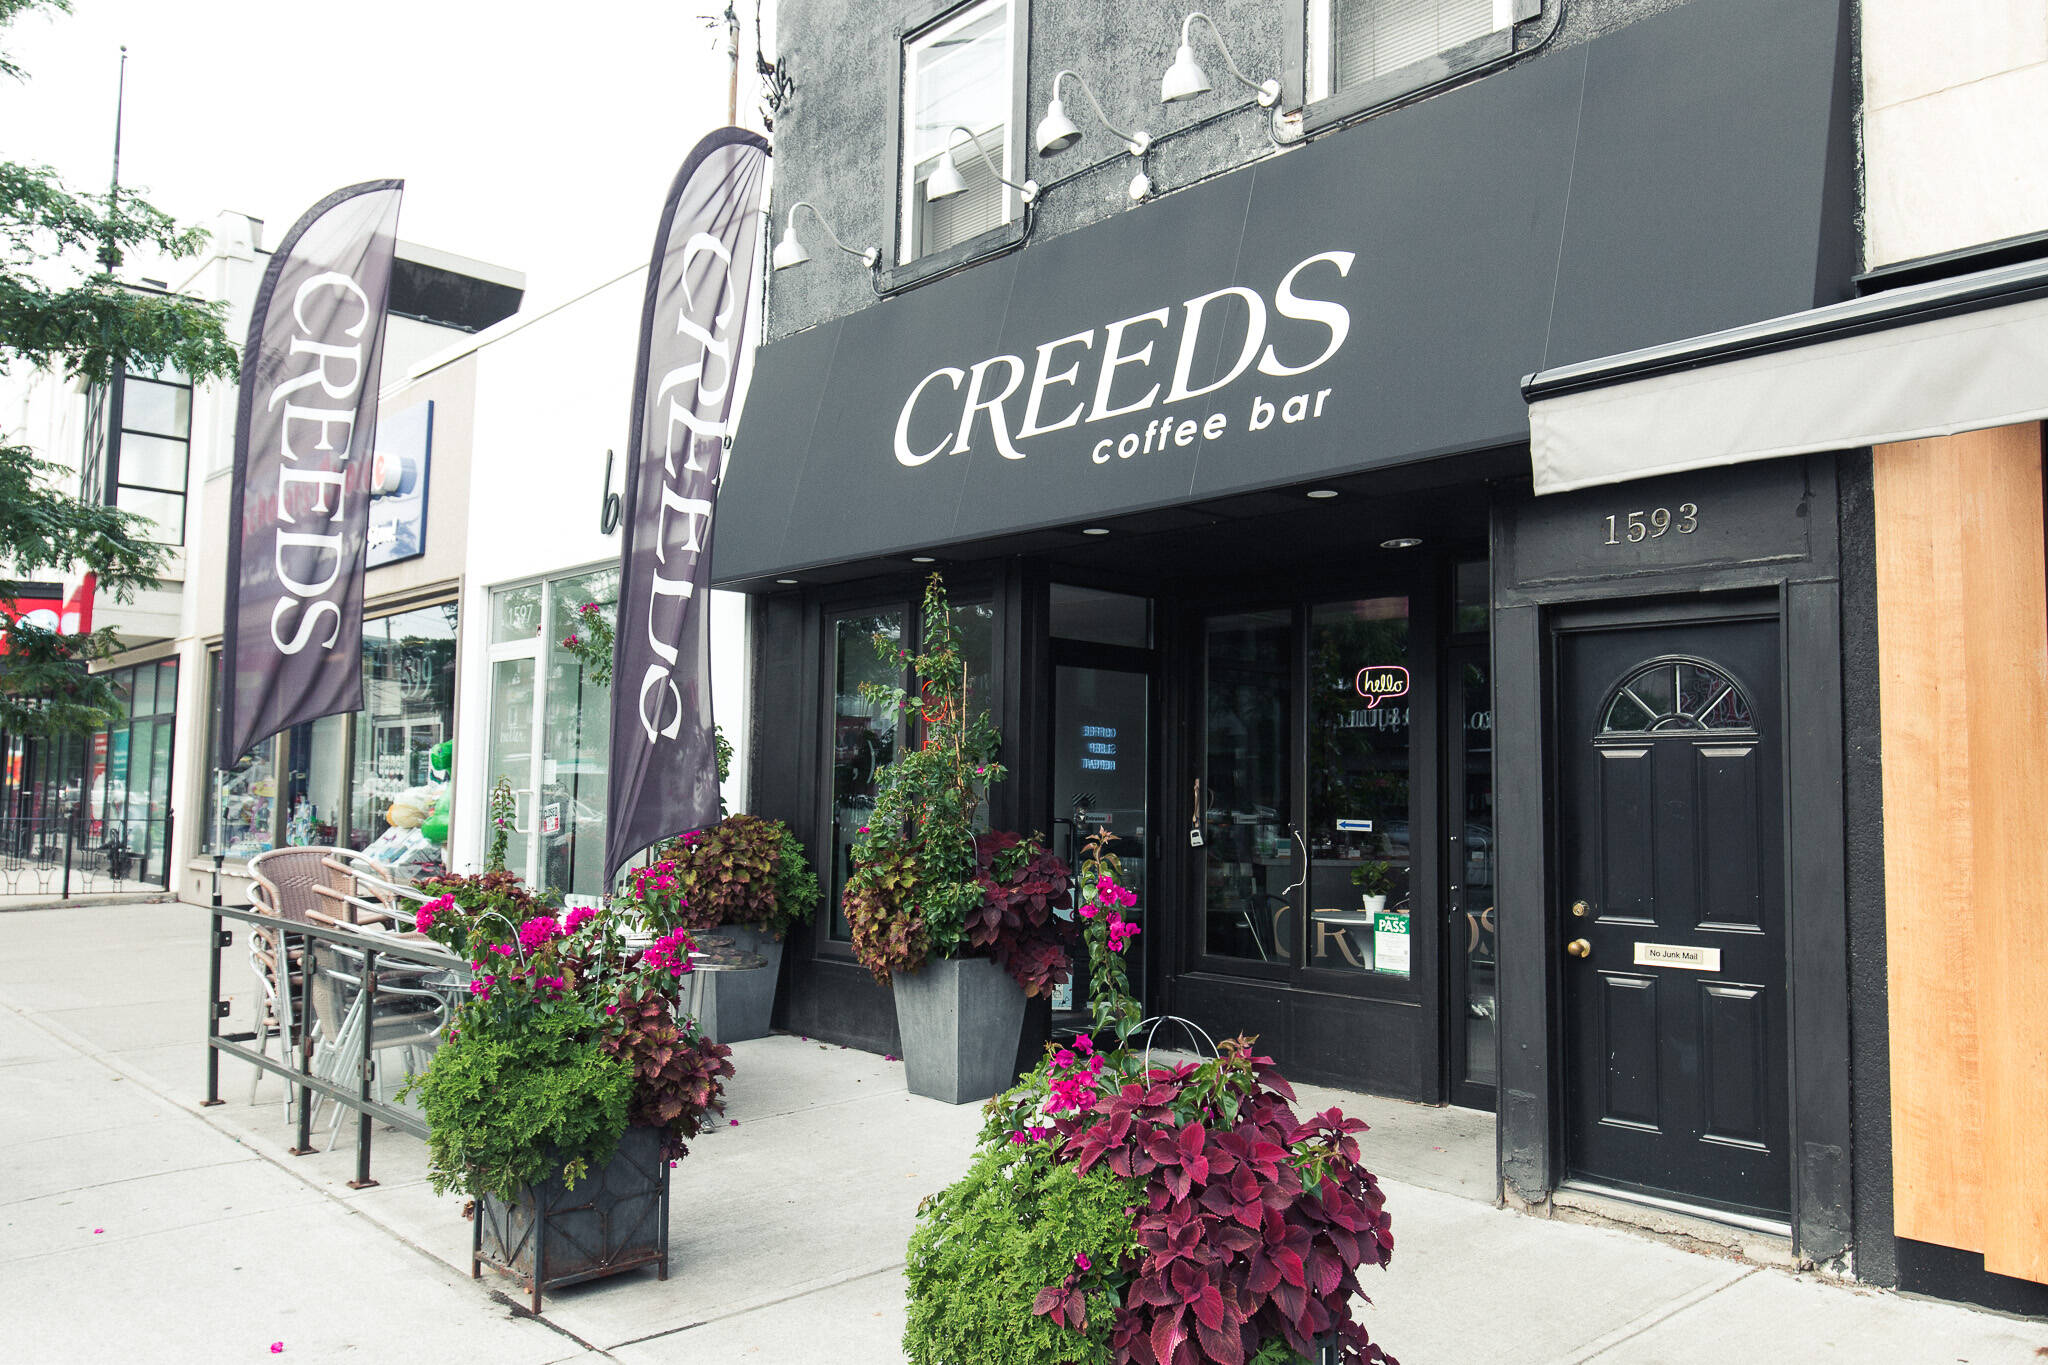 Creeds Coffee bar